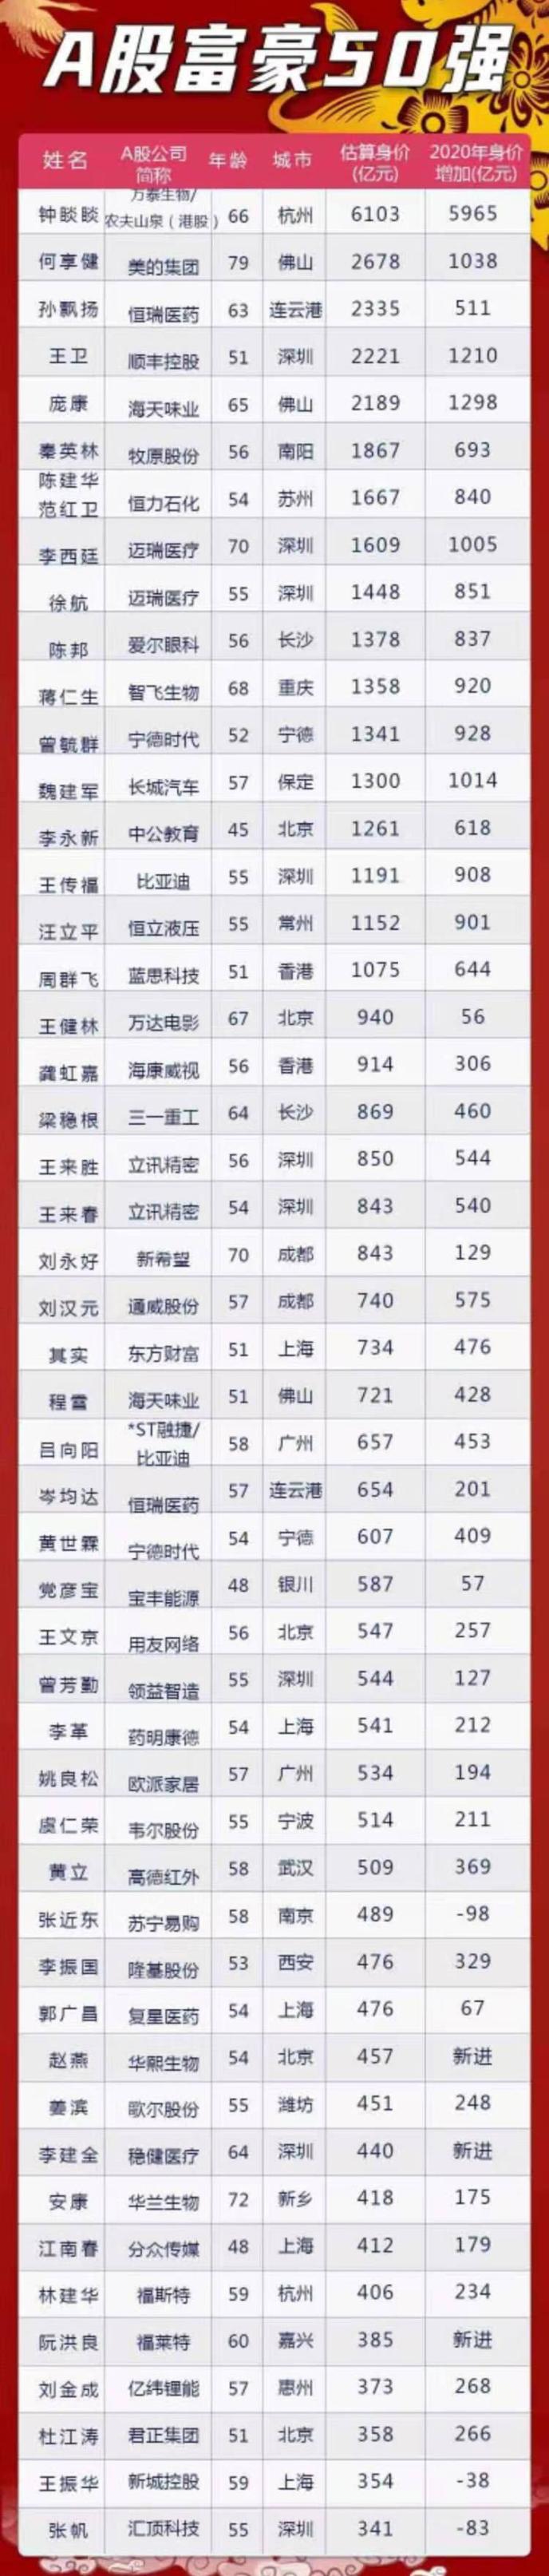 3.中国富豪榜的樊登排名是多少？